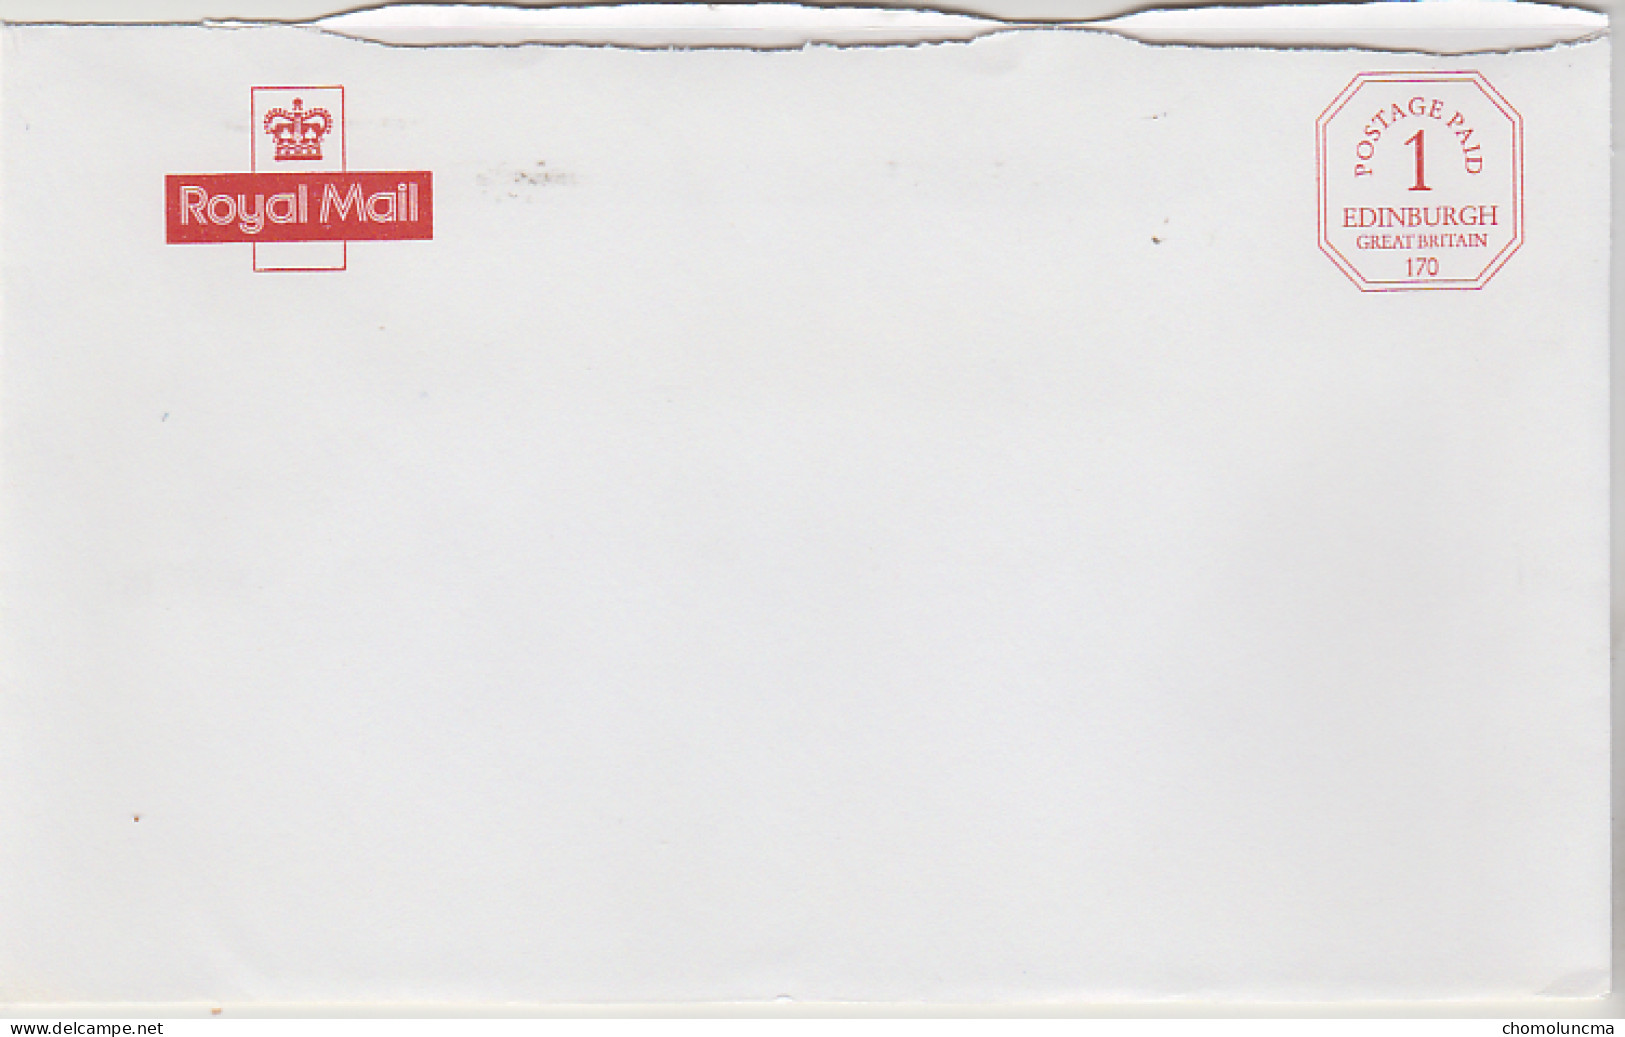 Royal Mail Cancel Postage Paid Edinburgh Printed In Red Port Payé Du Service Philatélique De Grande Bretagne - Oficiales